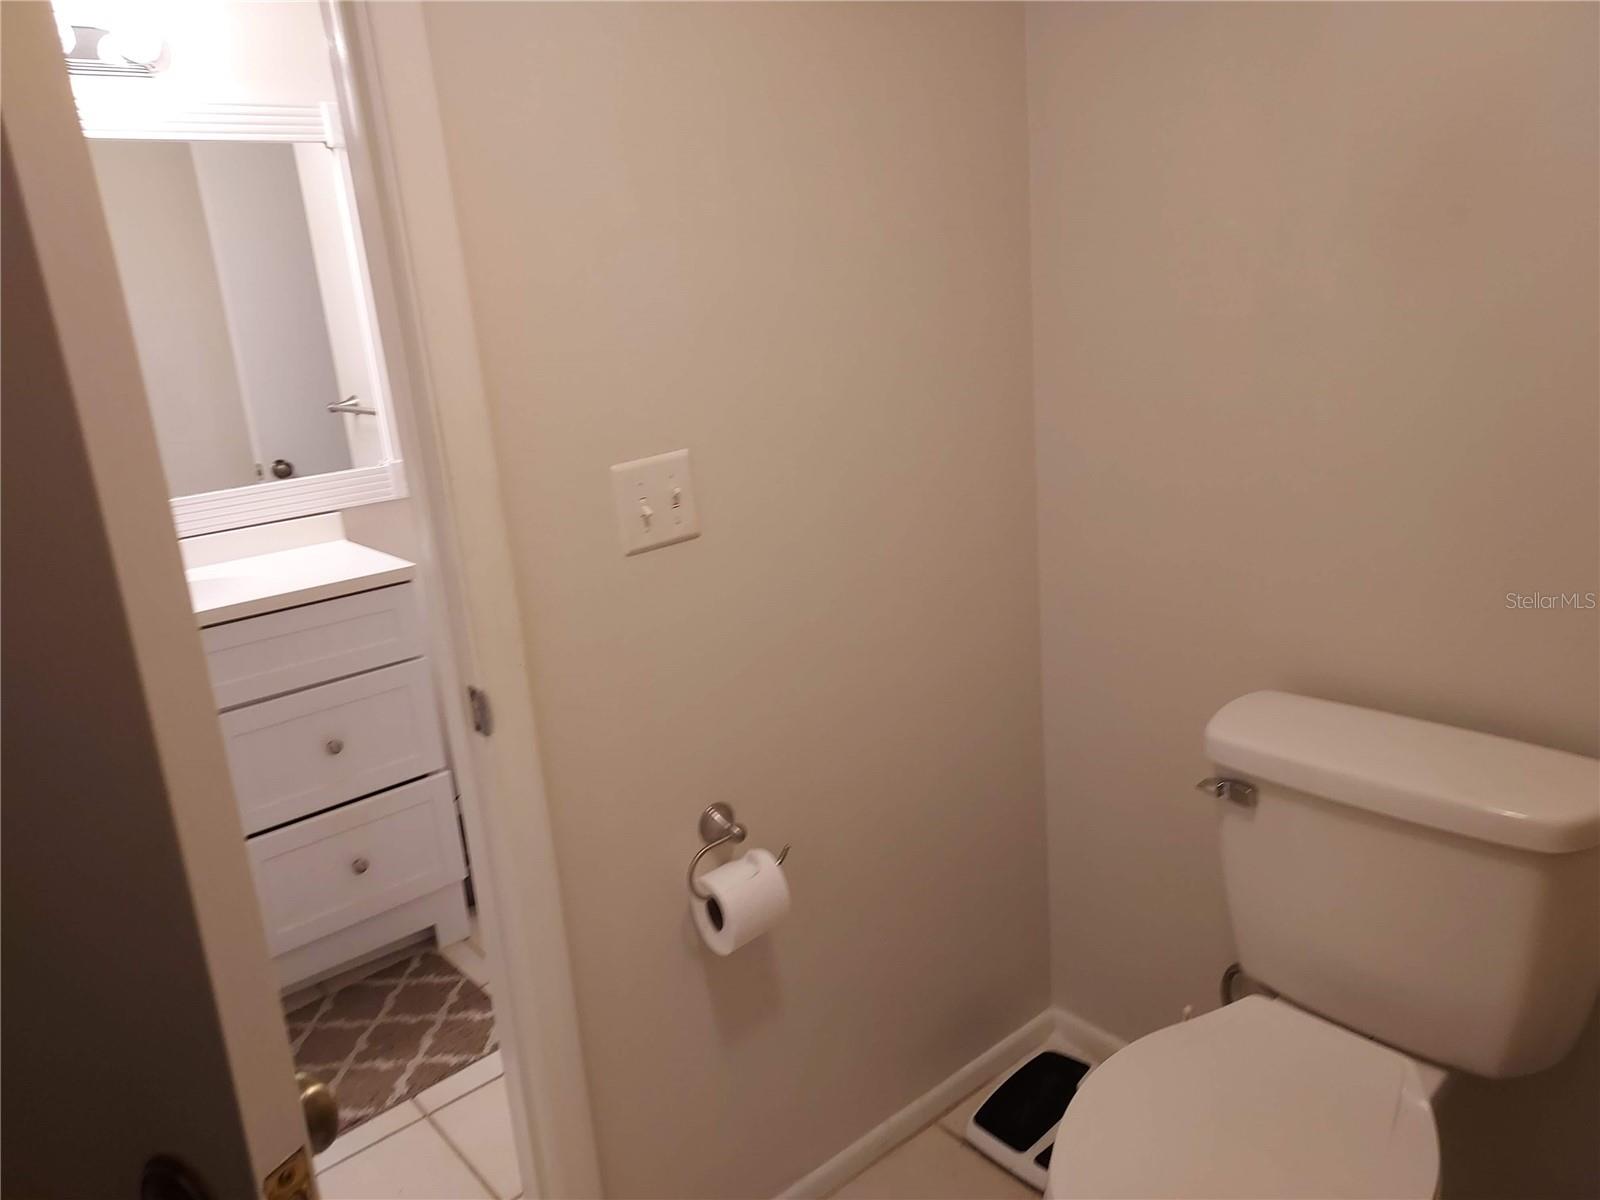 Bathroom separate vanity